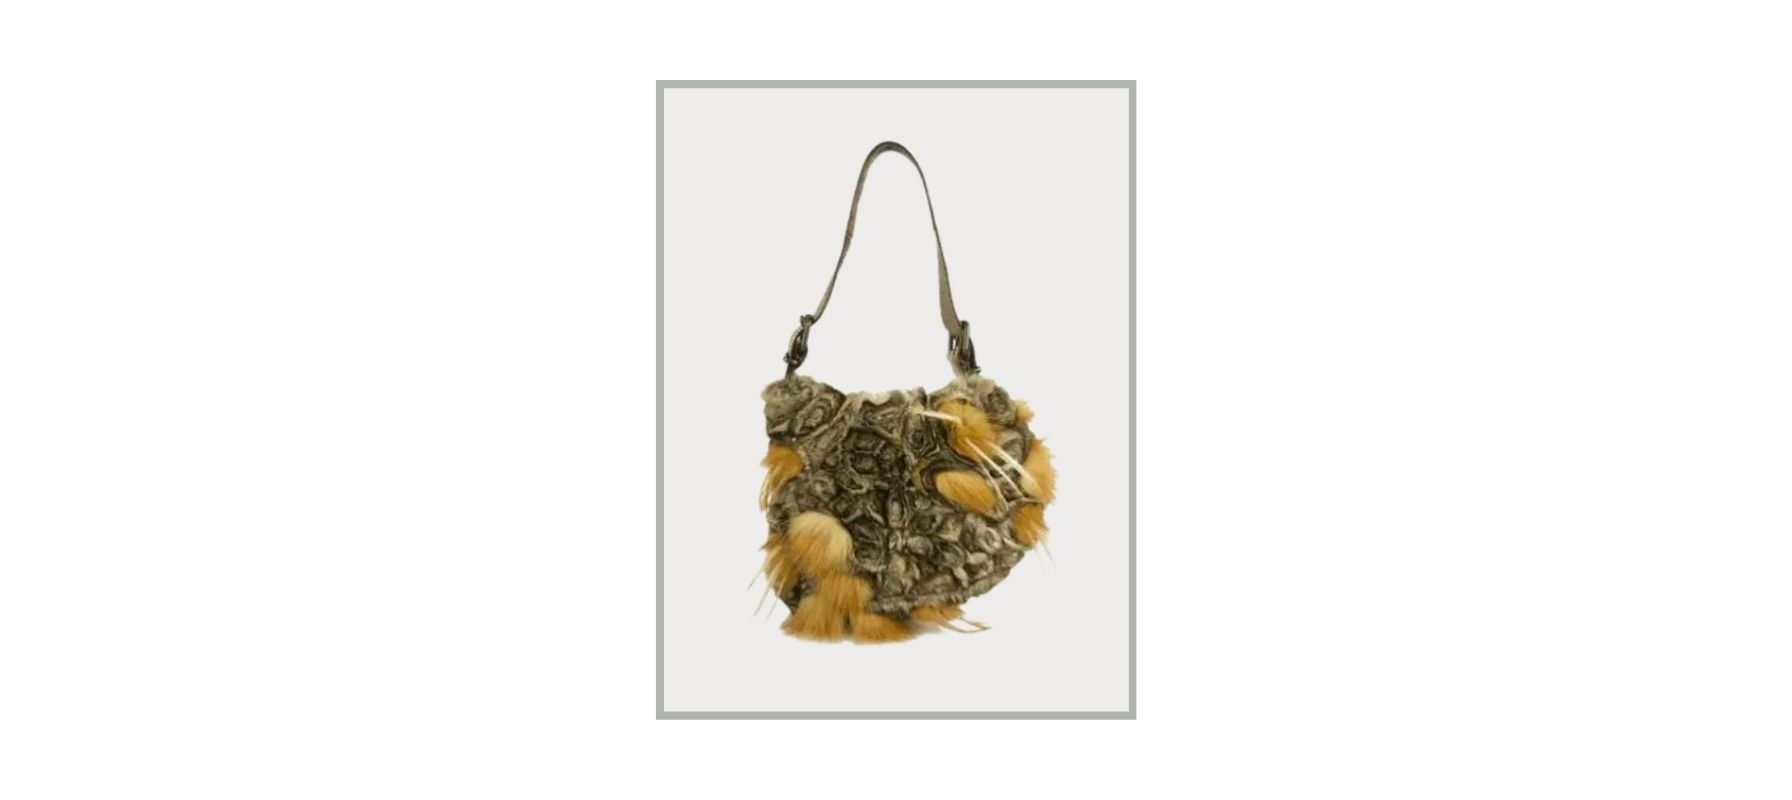 Handbags for Women: Buy Best Ladies Handbags Online - Zouk